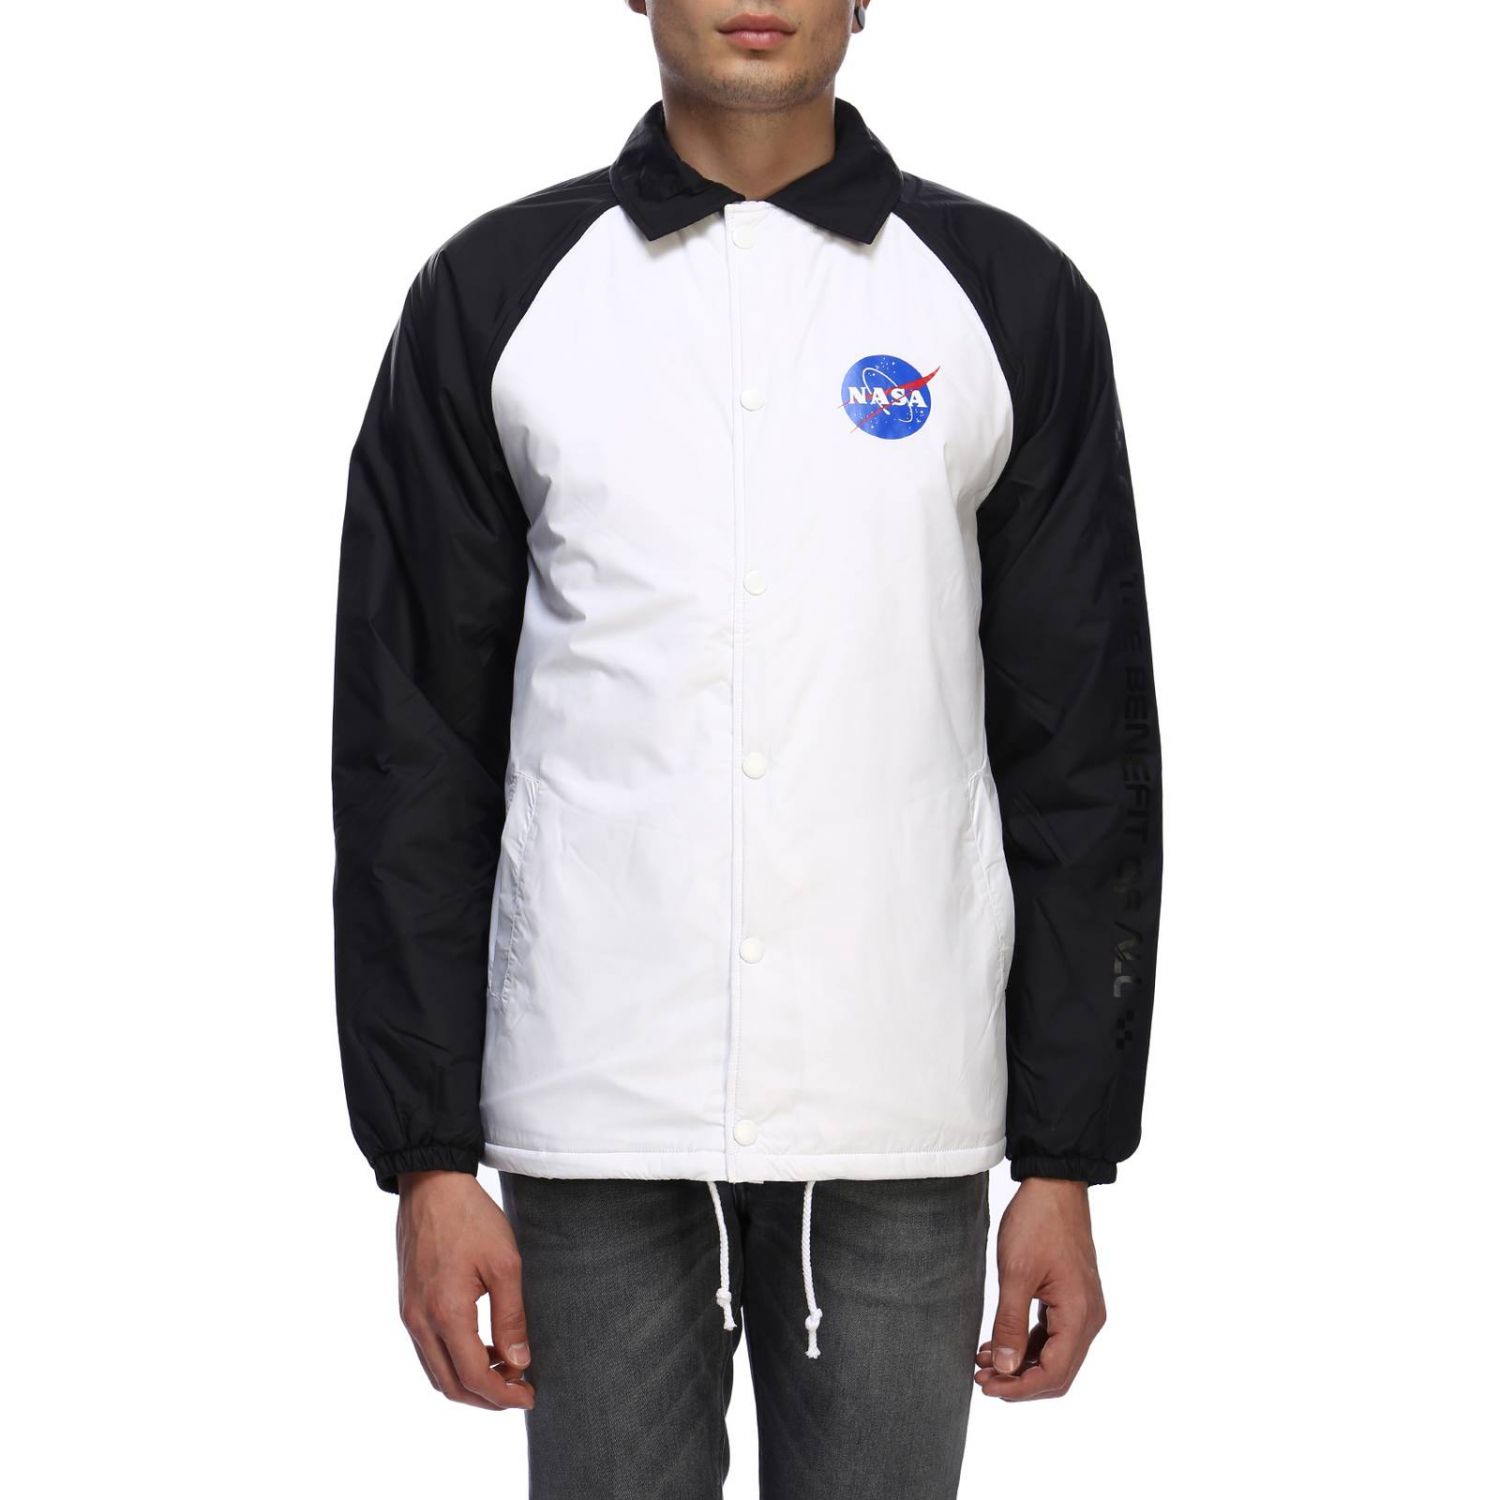 Vans Outlet: NASA jacket super insulating and water repellant NASA 